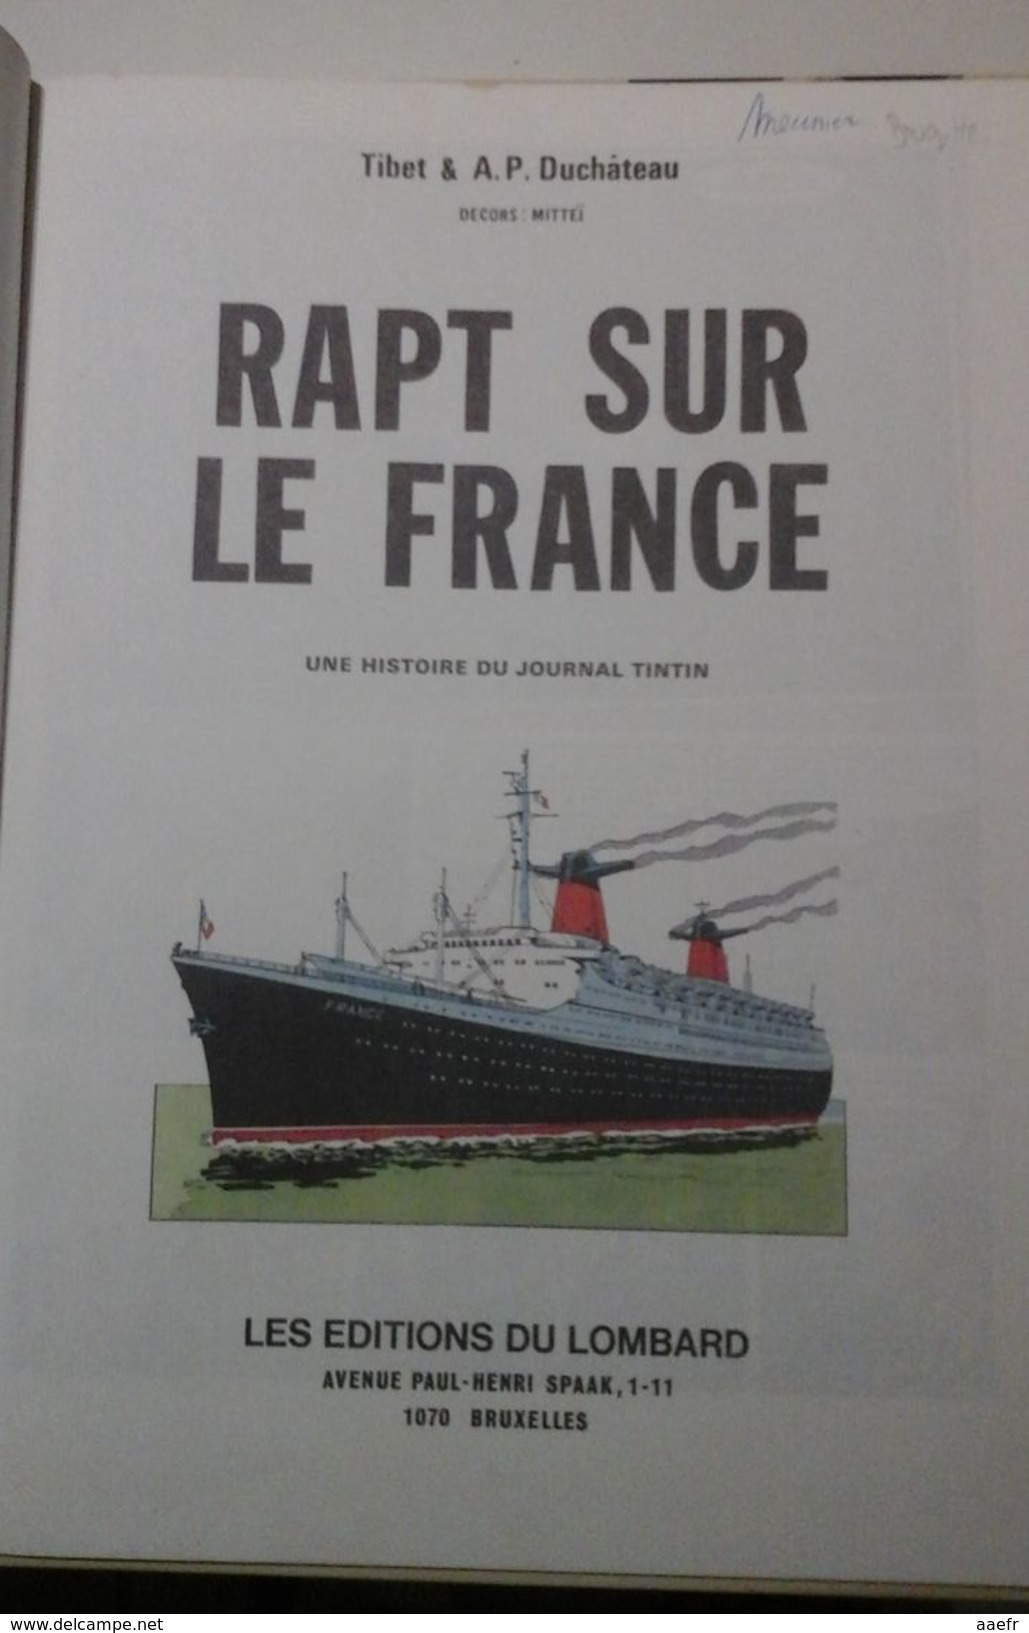 Ric Hochet - Rapt Sur Le France - Tibet & Duchateau - Lombard 1979? - Réf. 6a79? - Ric Hochet